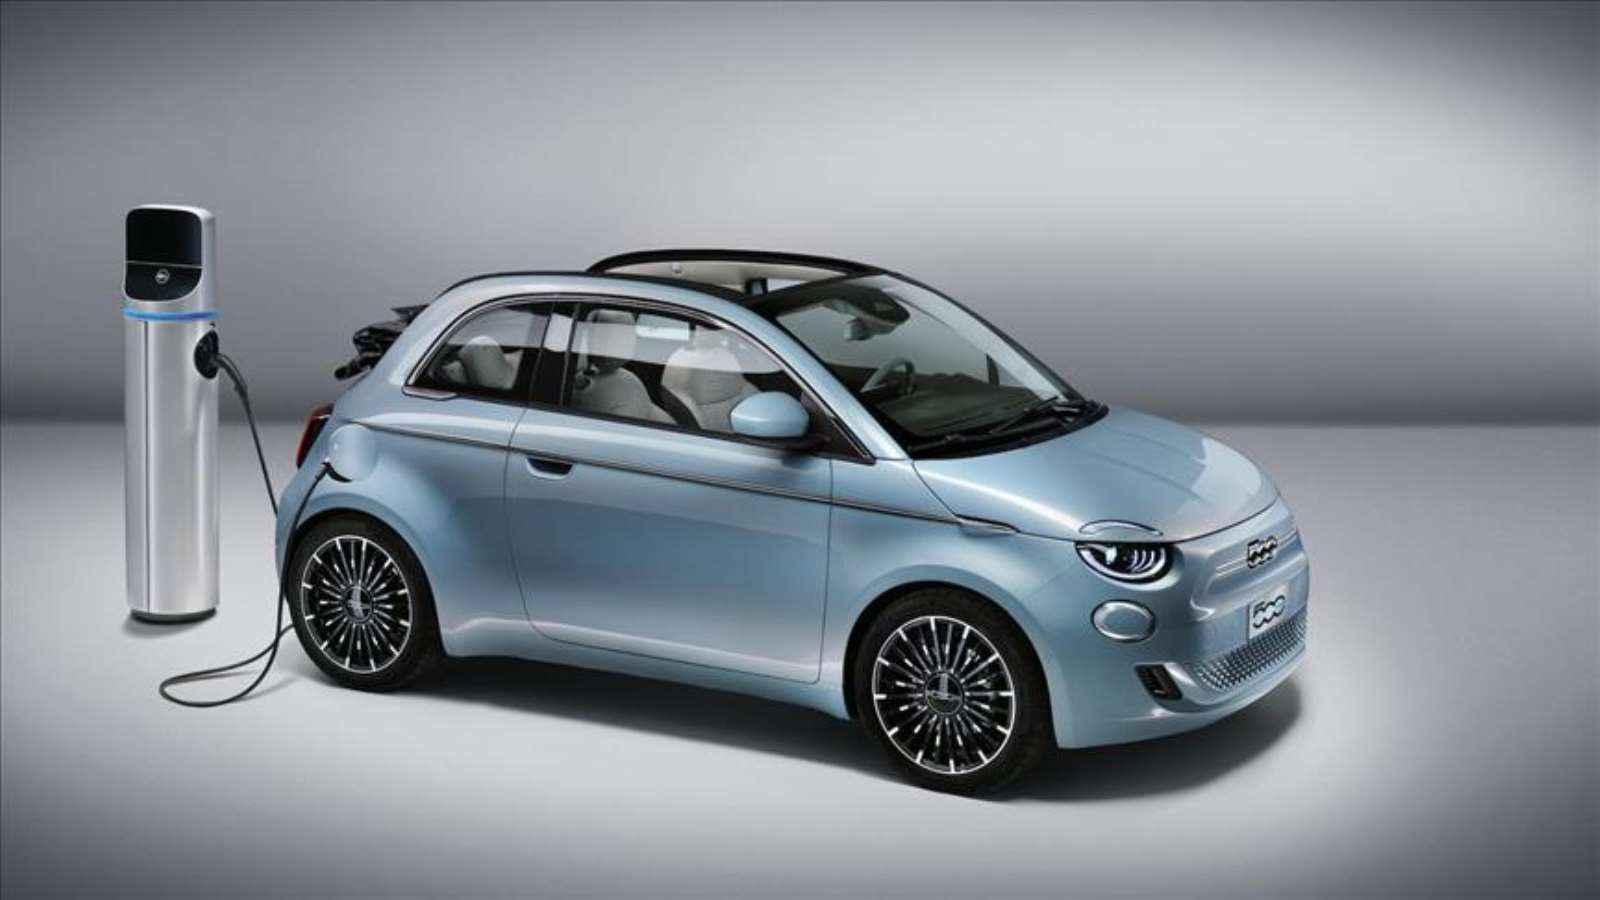 Fiat yeni yıla kampanyalarla başladı: Yüzde 0 faiz, duvar tipi şarj istasyonu hediye...